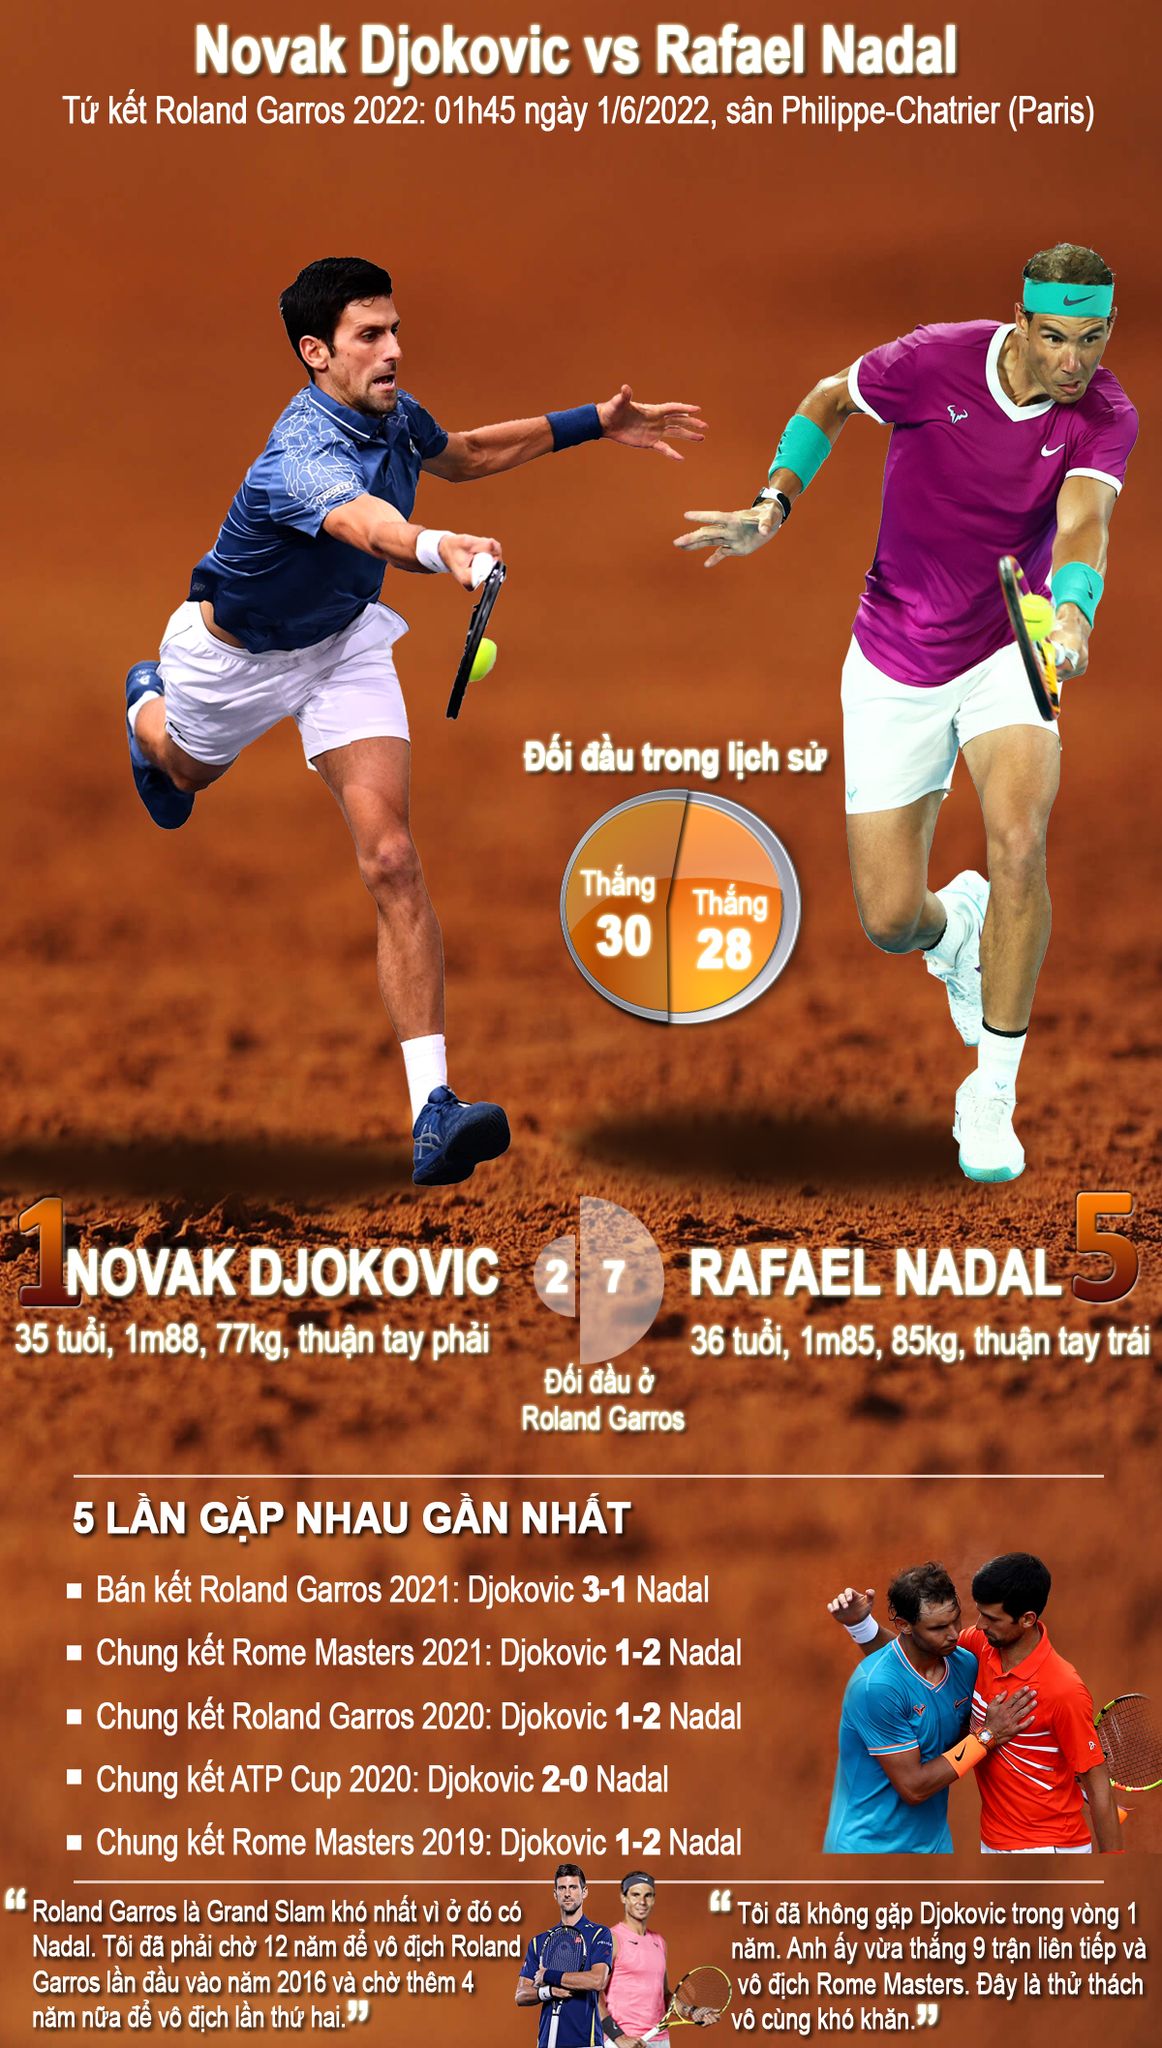 [INFOGRAPHIC] Tứ kết Roland Garros 2022: Novak Djokovic đại chiến Rafael Nadal - Ảnh 1